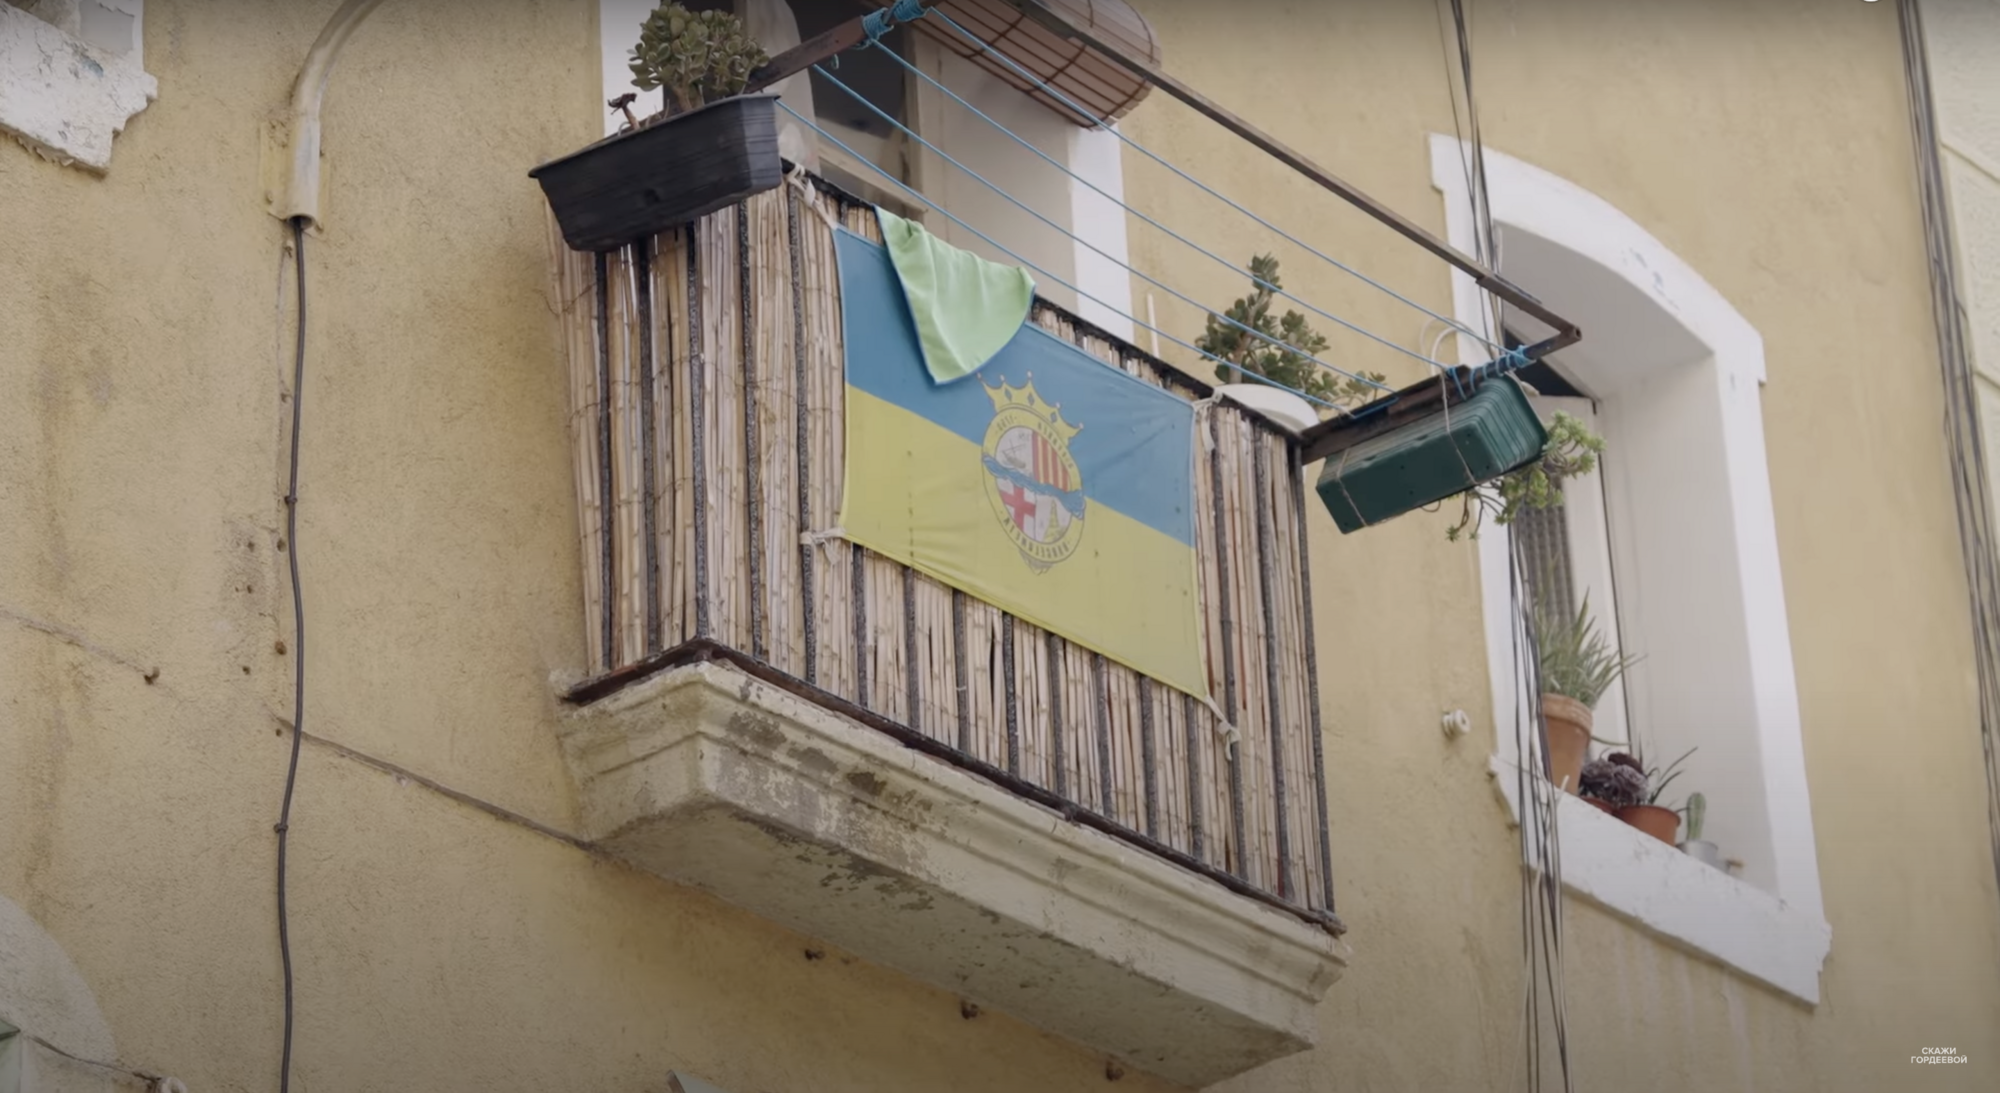  Україна ні до чого: чому на багатьох балконах Барселони висять синьо-жовті прапори